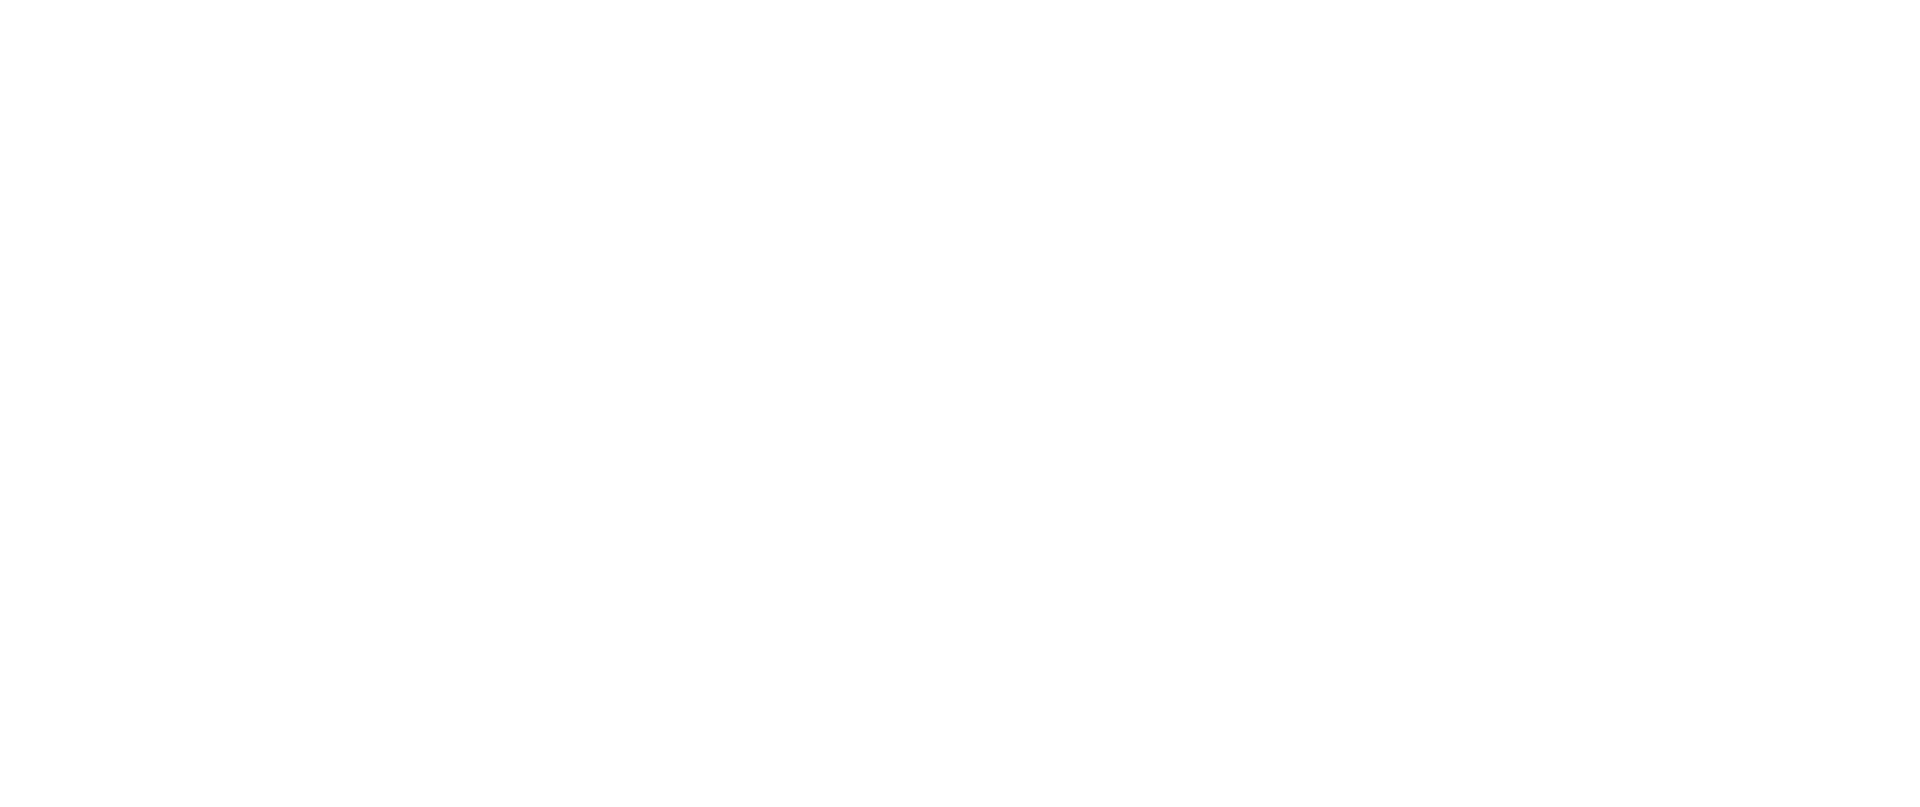 Manatee Community Foundation logo